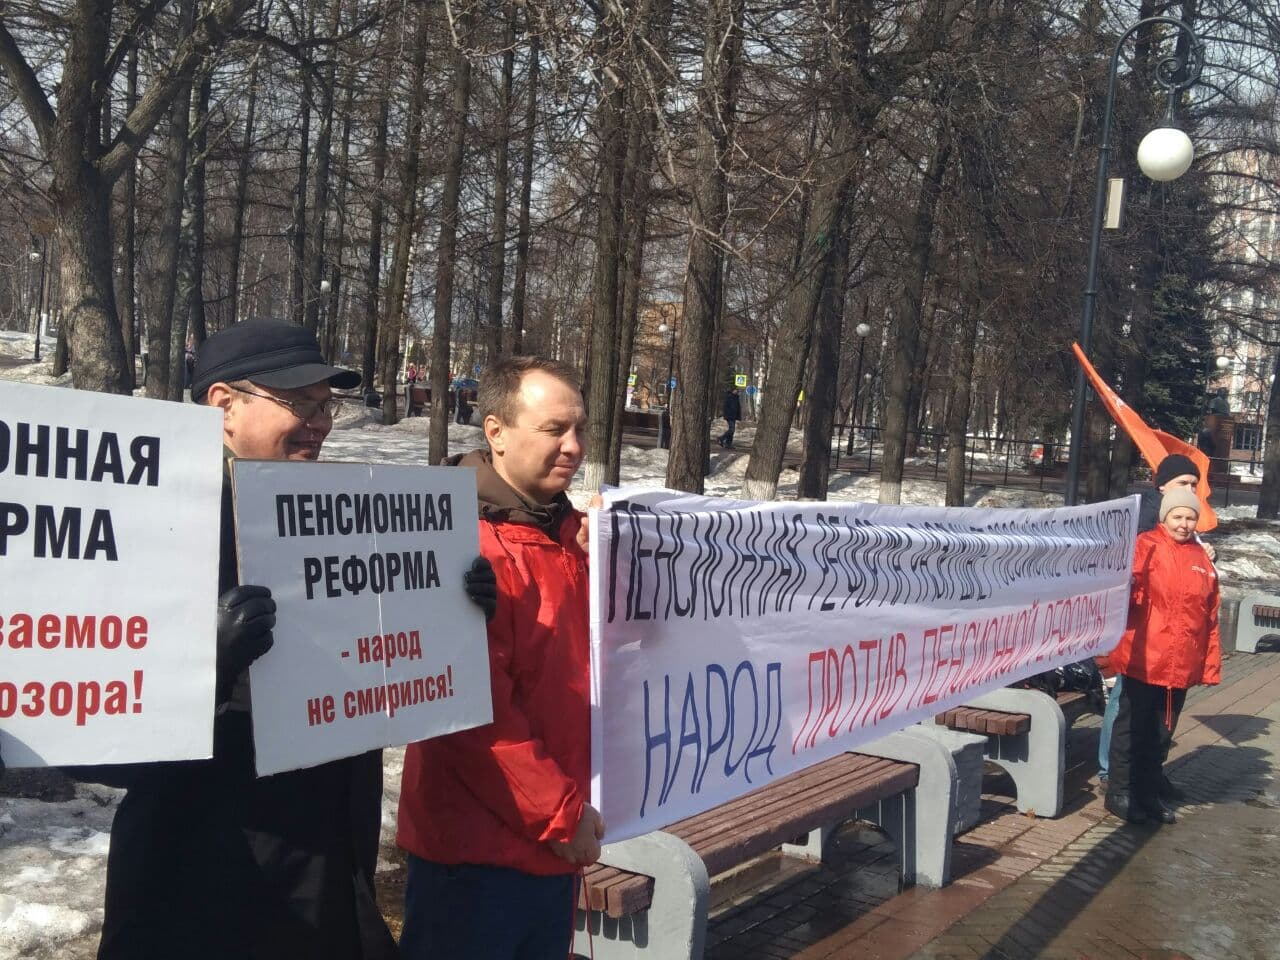 Ижевск. Пикет против пенсионной реформы